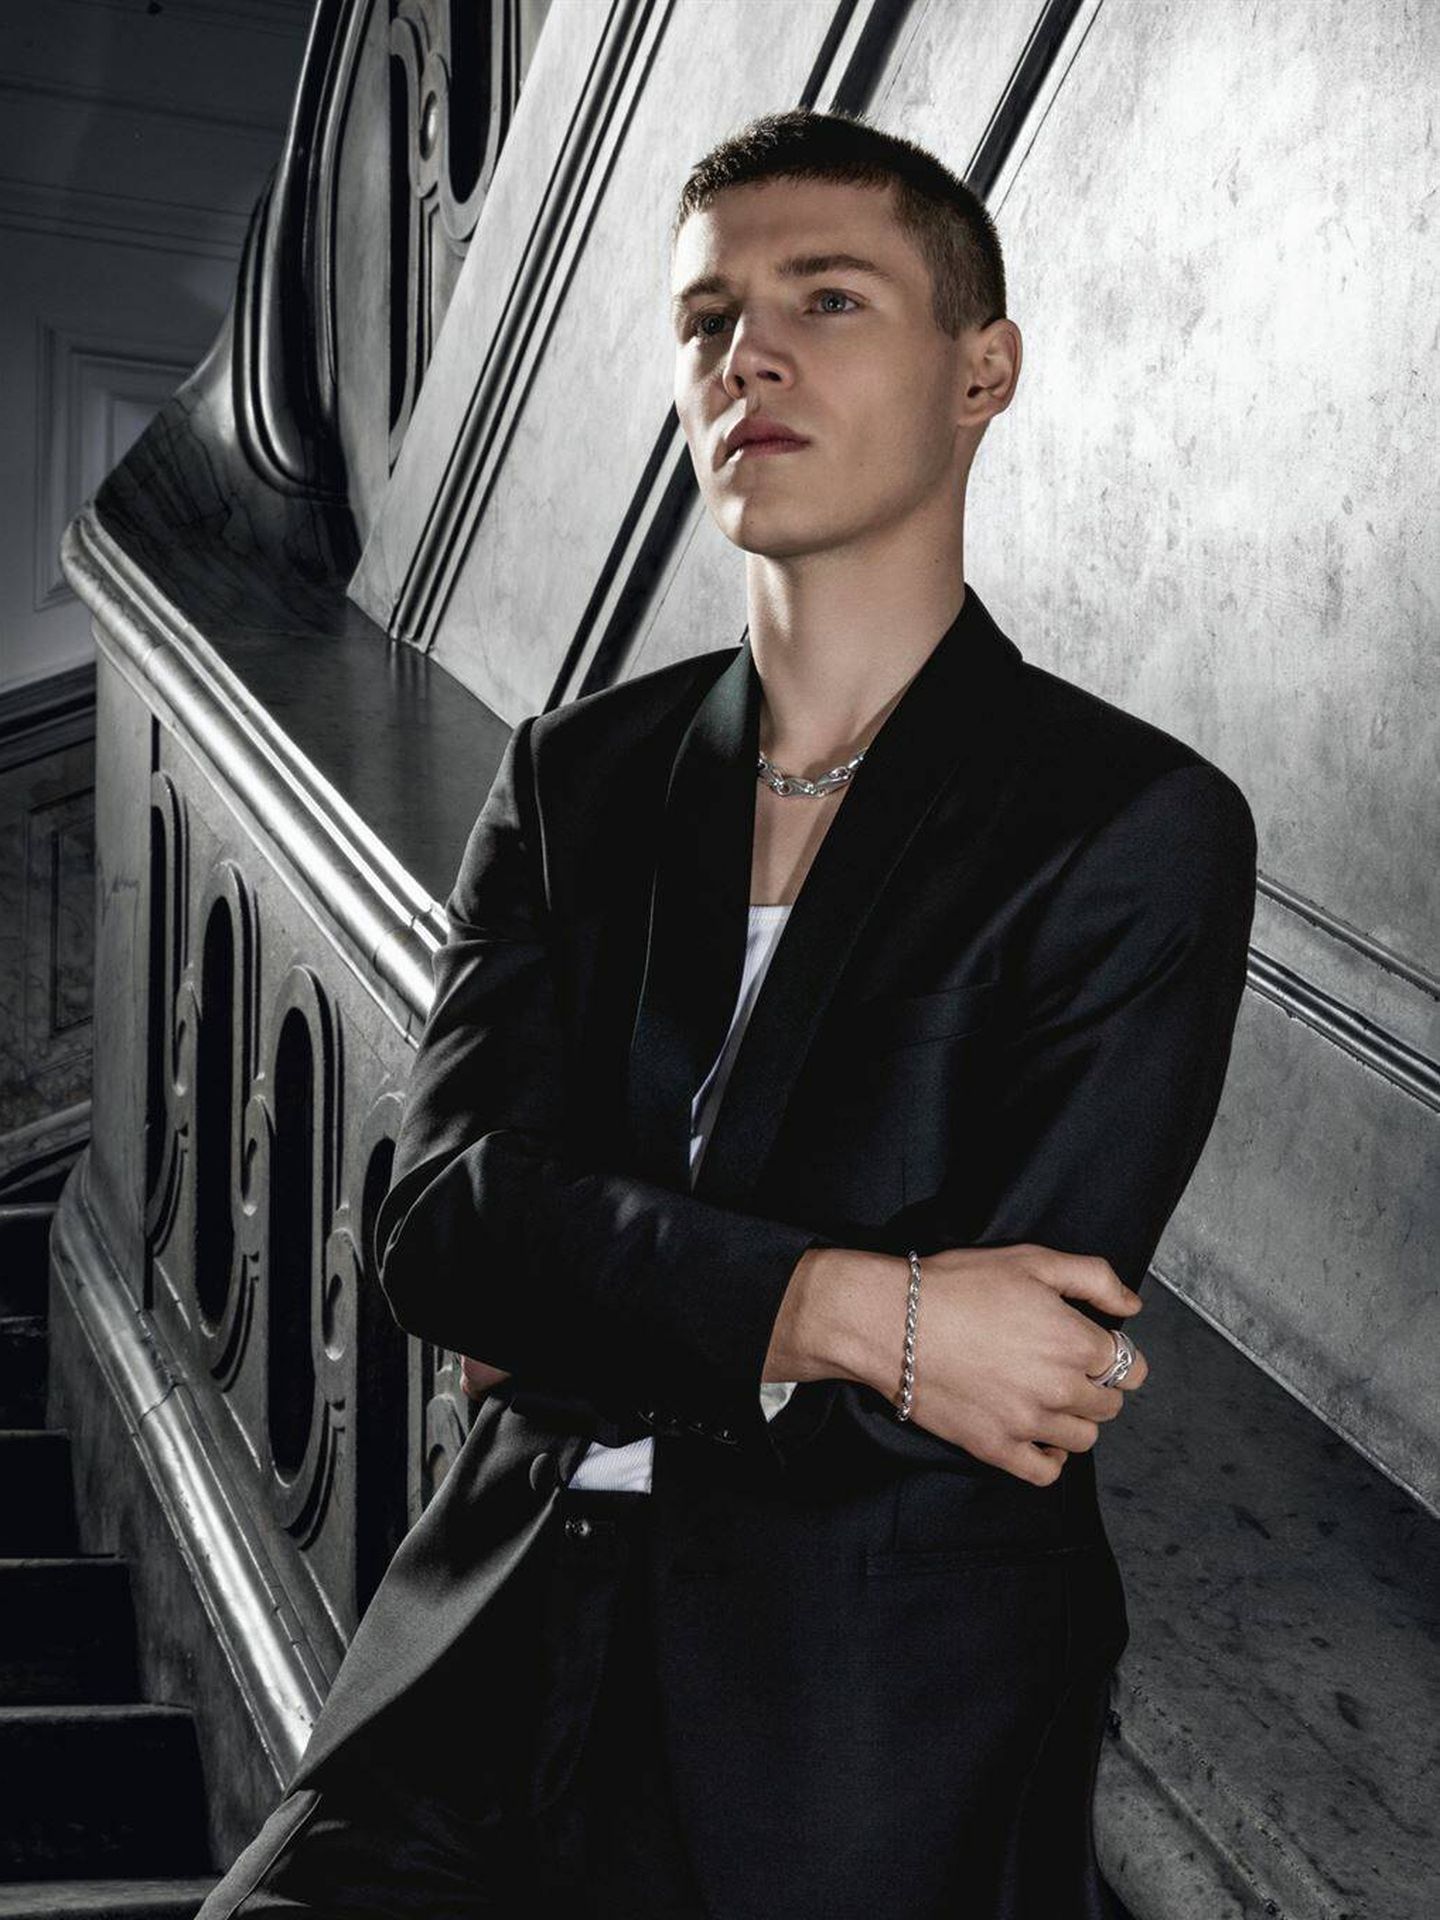 El príncipe Félix, en la nueva campaña publicitaria de Georg Jensen. (Georg Jensen)